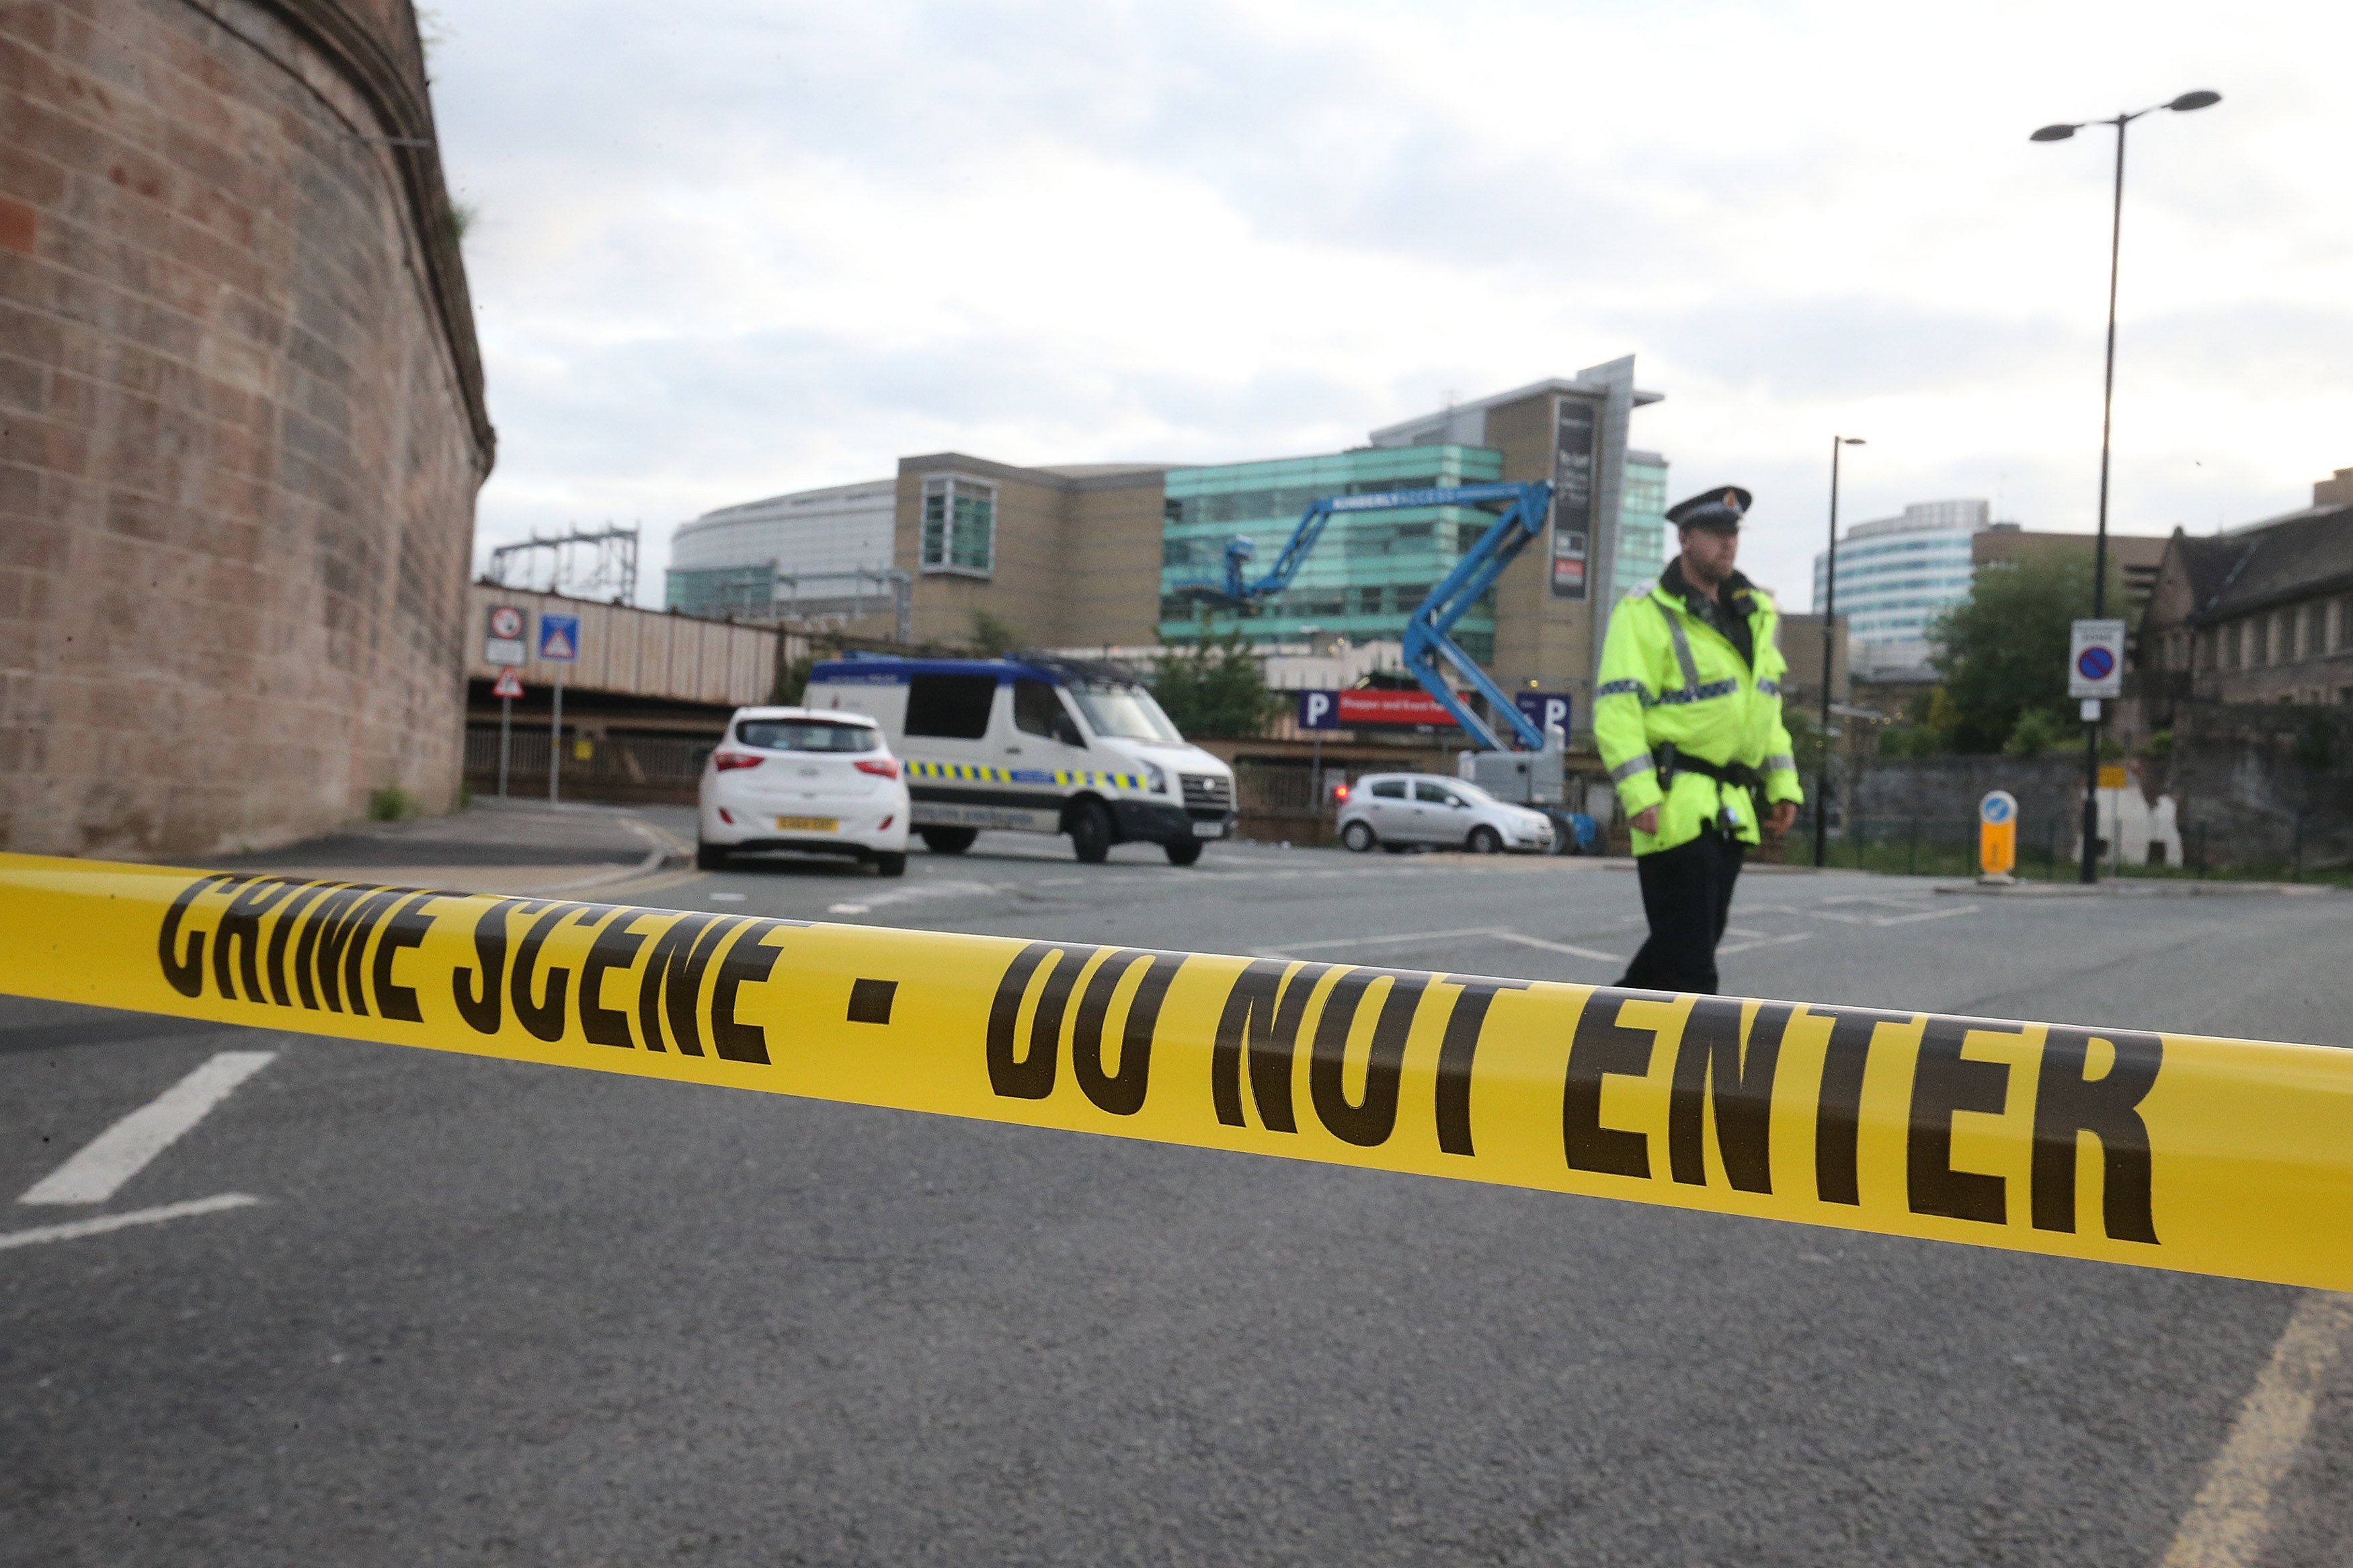 Cuatro partidos suspenden la campaña después de la explosión en Manchester